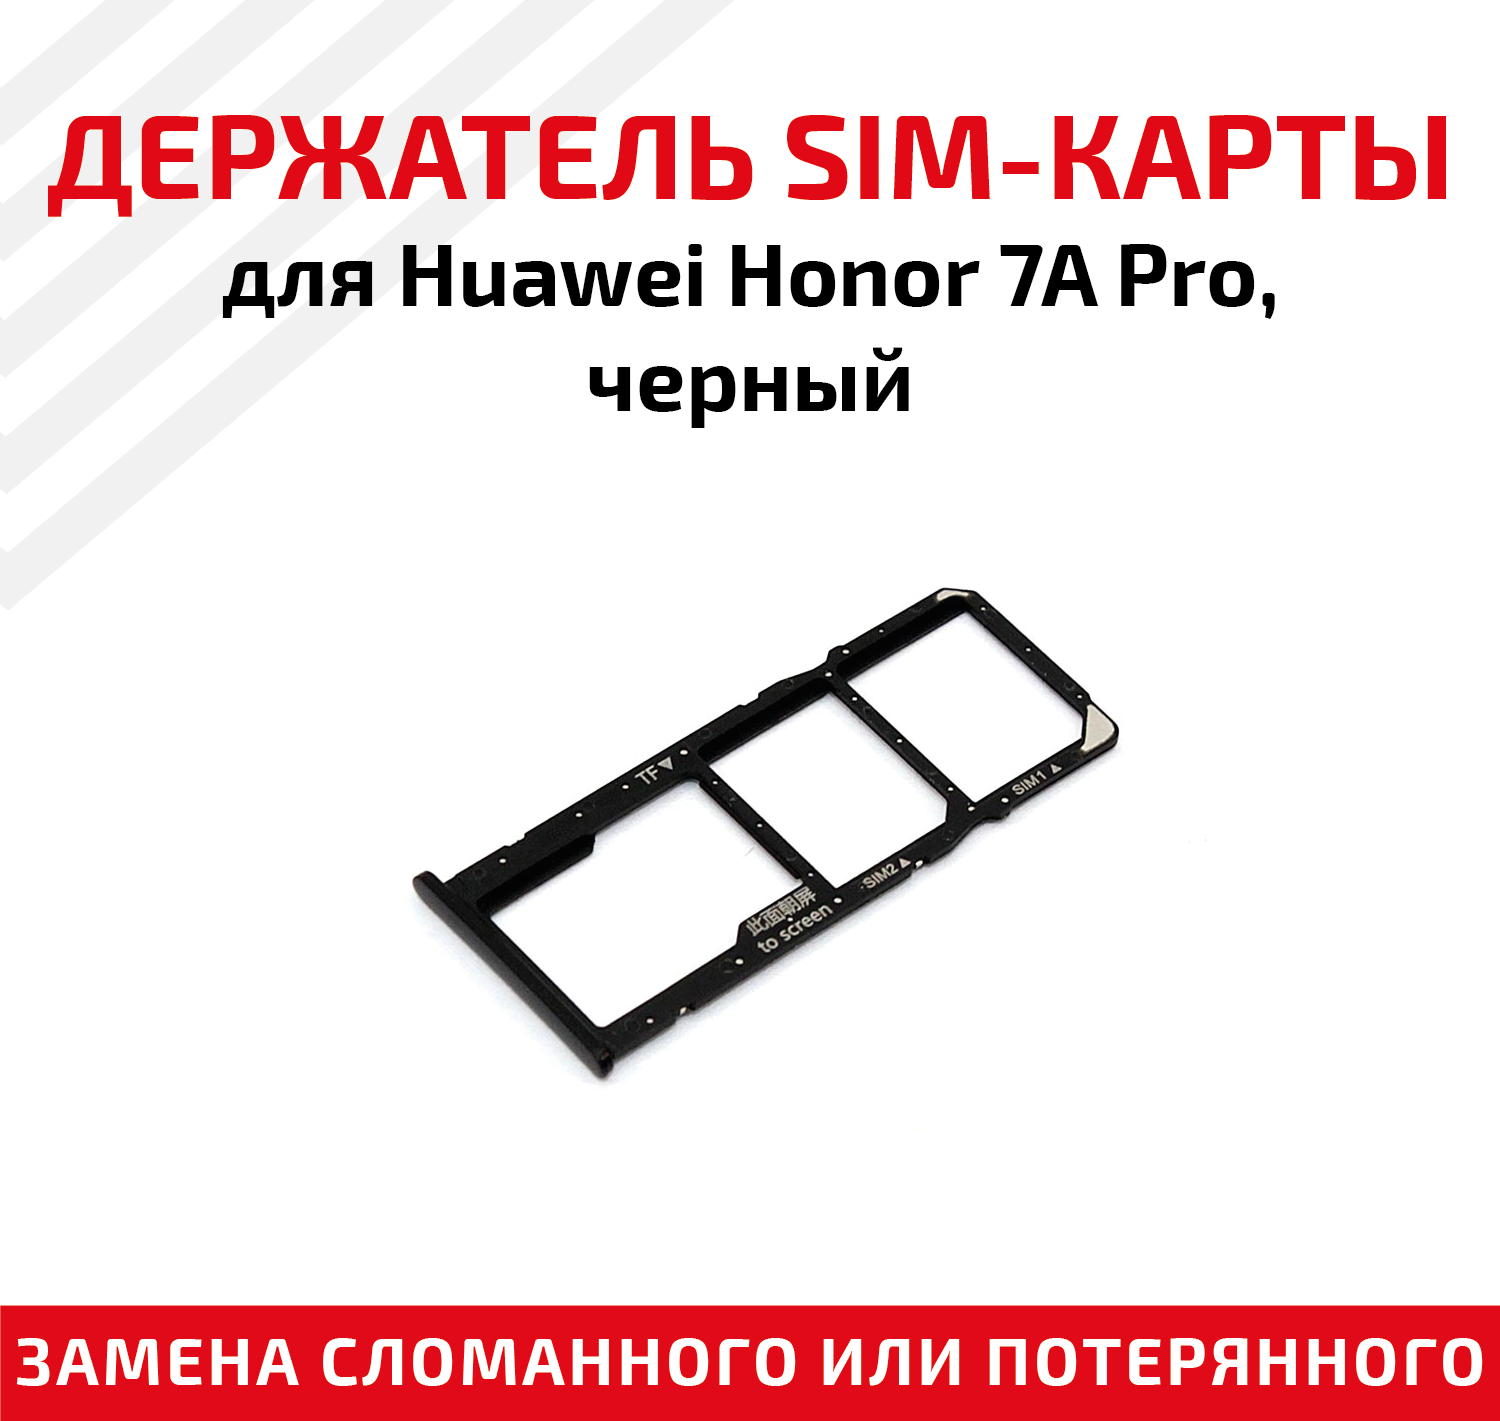 Лоток (держатель, контейнер, слот) SIM-карты для мобильного телефона (смартфона) Huawei Honor 7A Pro, черный